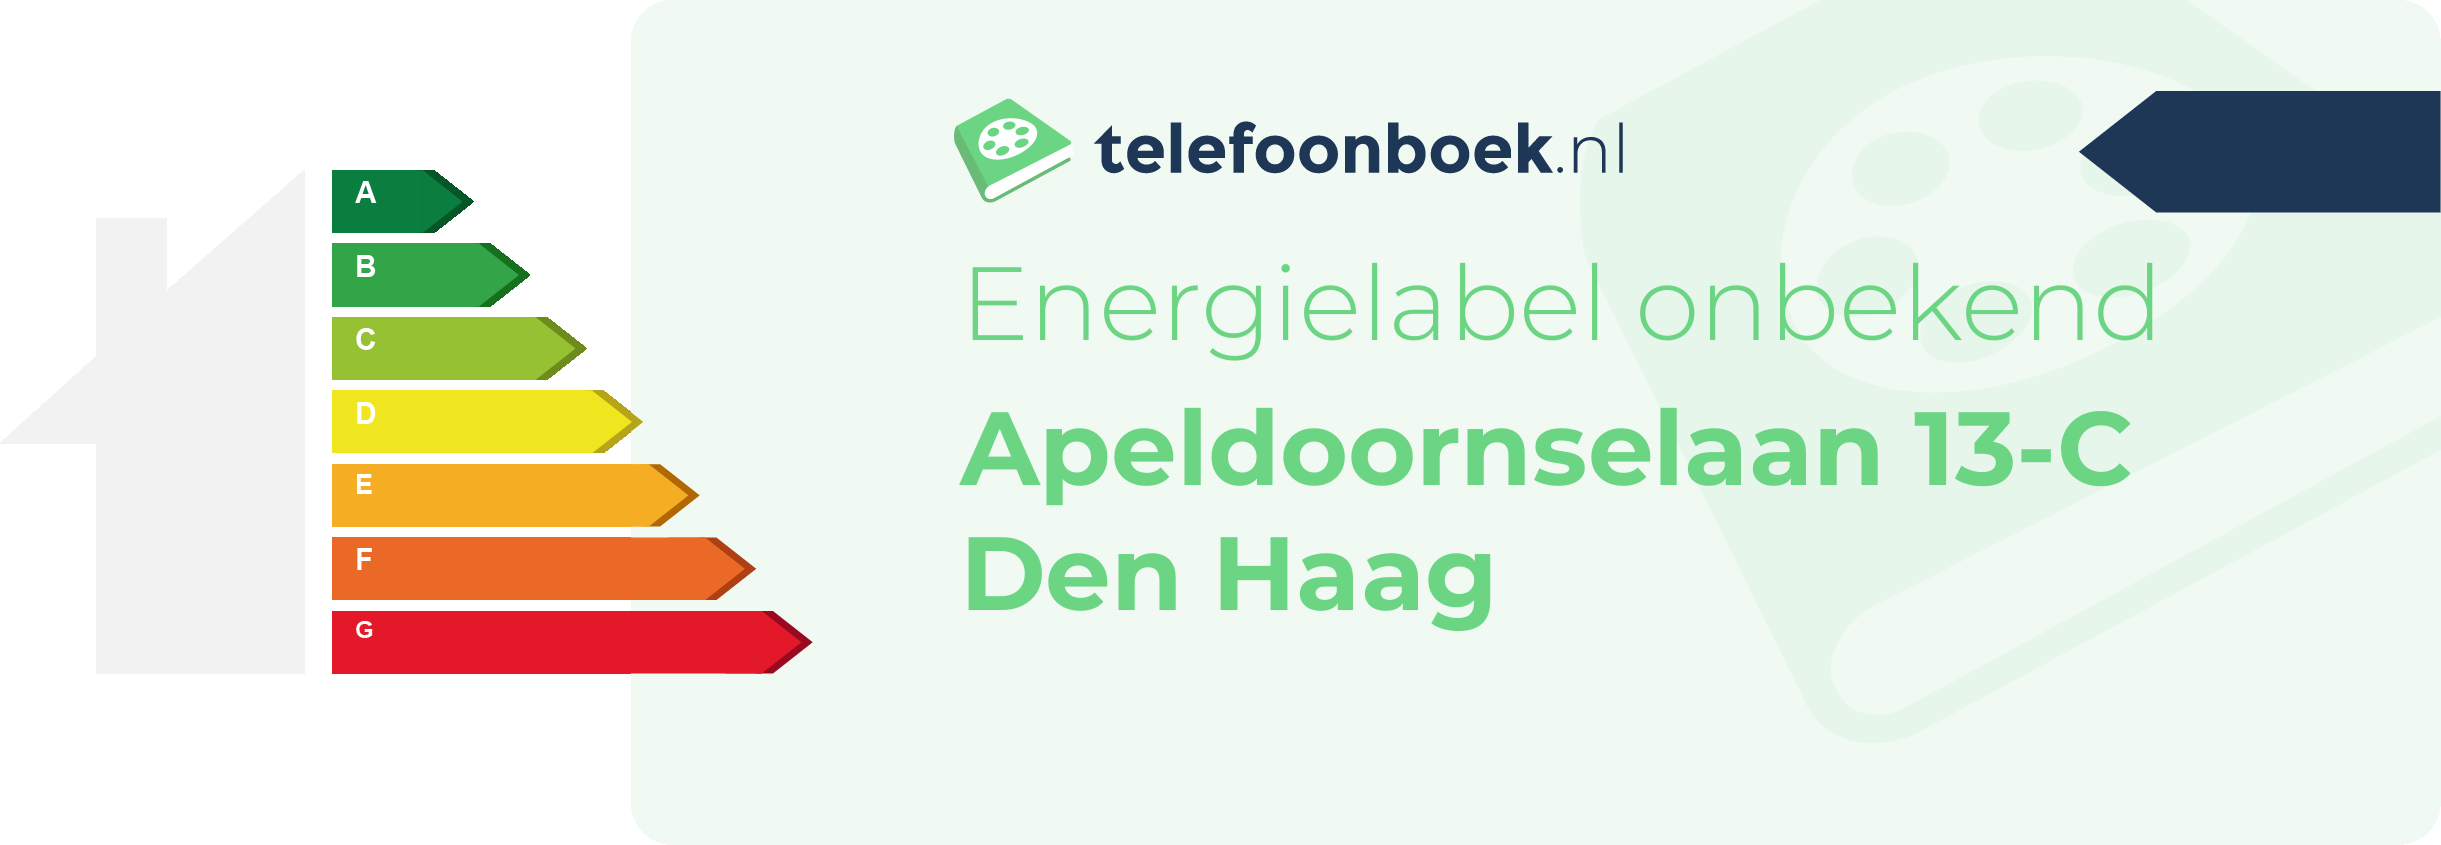 Energielabel Apeldoornselaan 13-C Den Haag